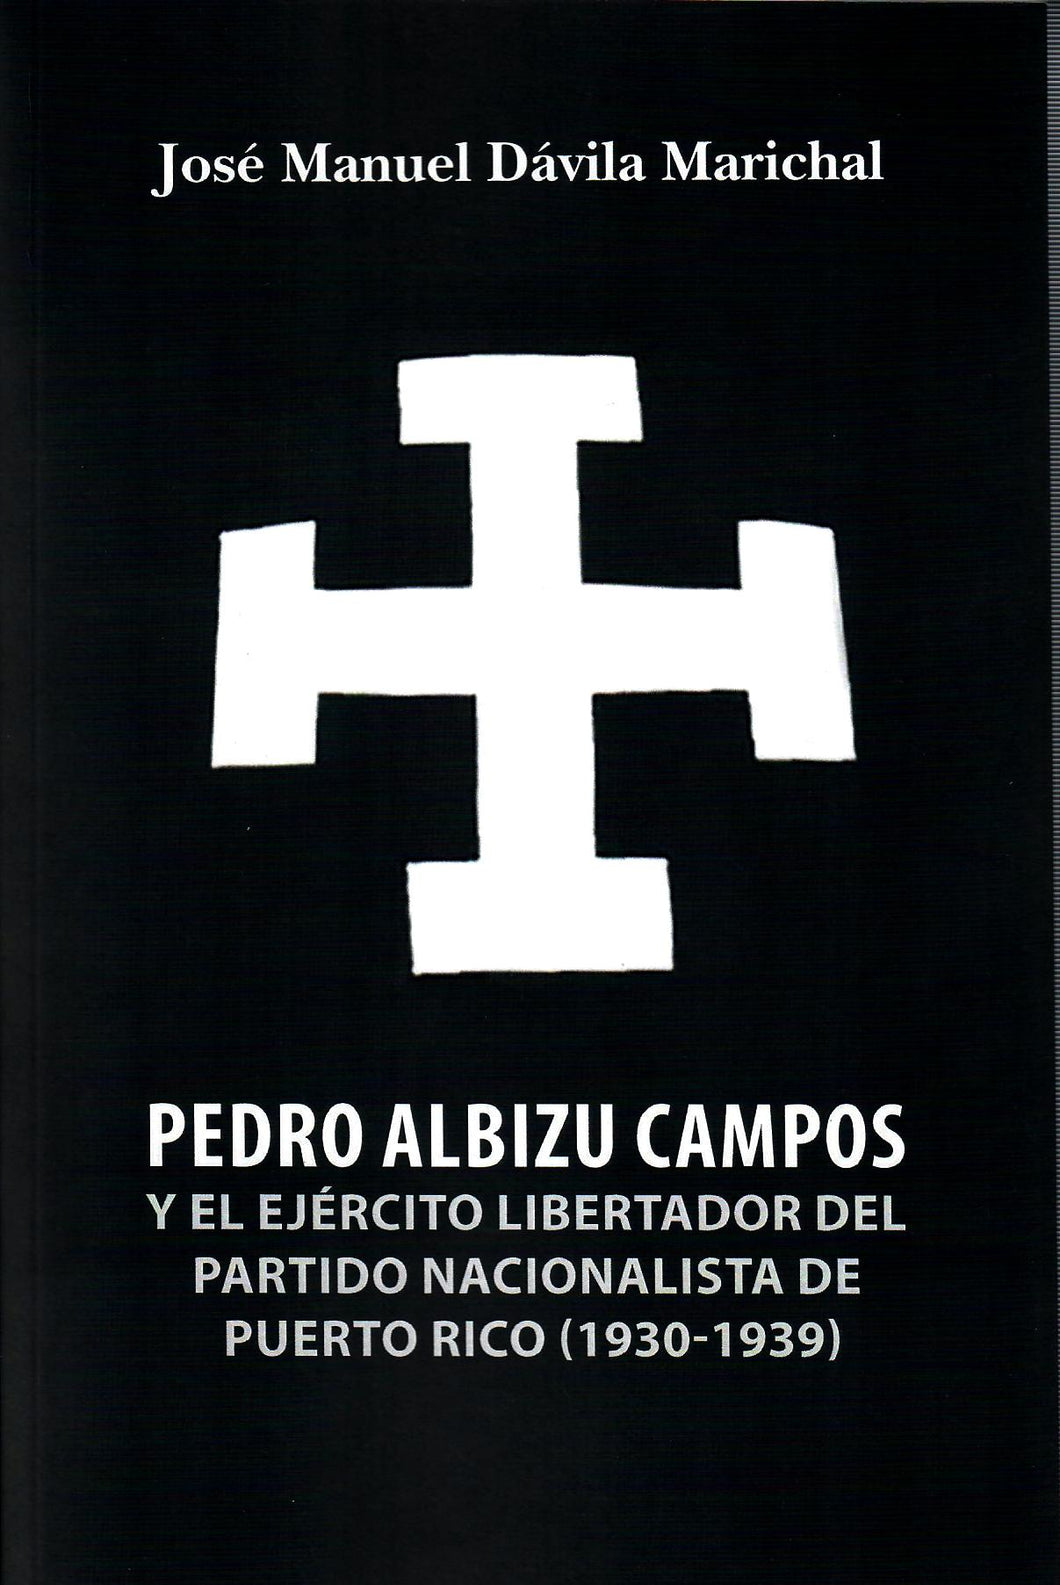 PEDRO ALBIZU CAMPOS Y EL EJÉRCITO LIBERTADOR DEL PARTIDO NACIONALISTA DE PUERTO RICO (1930-1939) - José Manuel Dávila Marichal